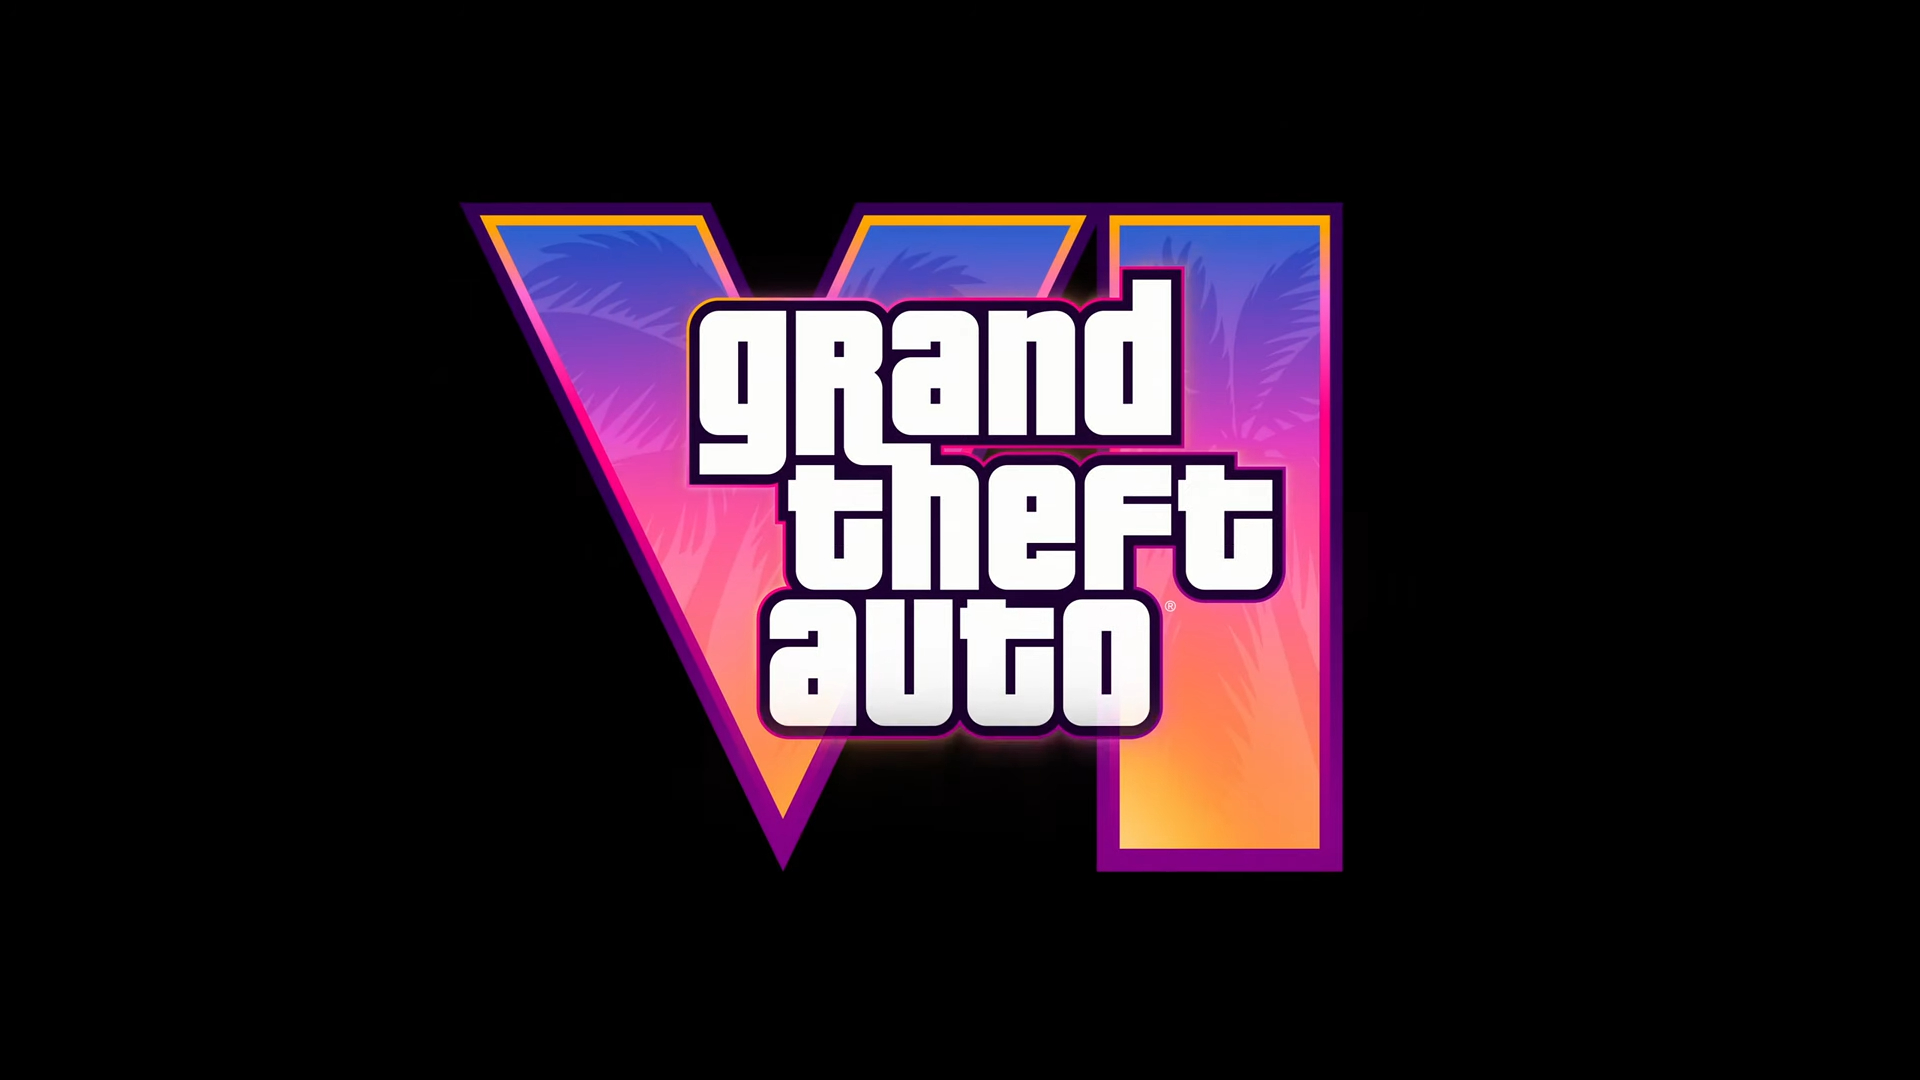 Aquí pueden ver el largamente esperado primer tráiler de GTA 6 o Grand Theft Auto VI y descubrir cómo será este nuevo juego.